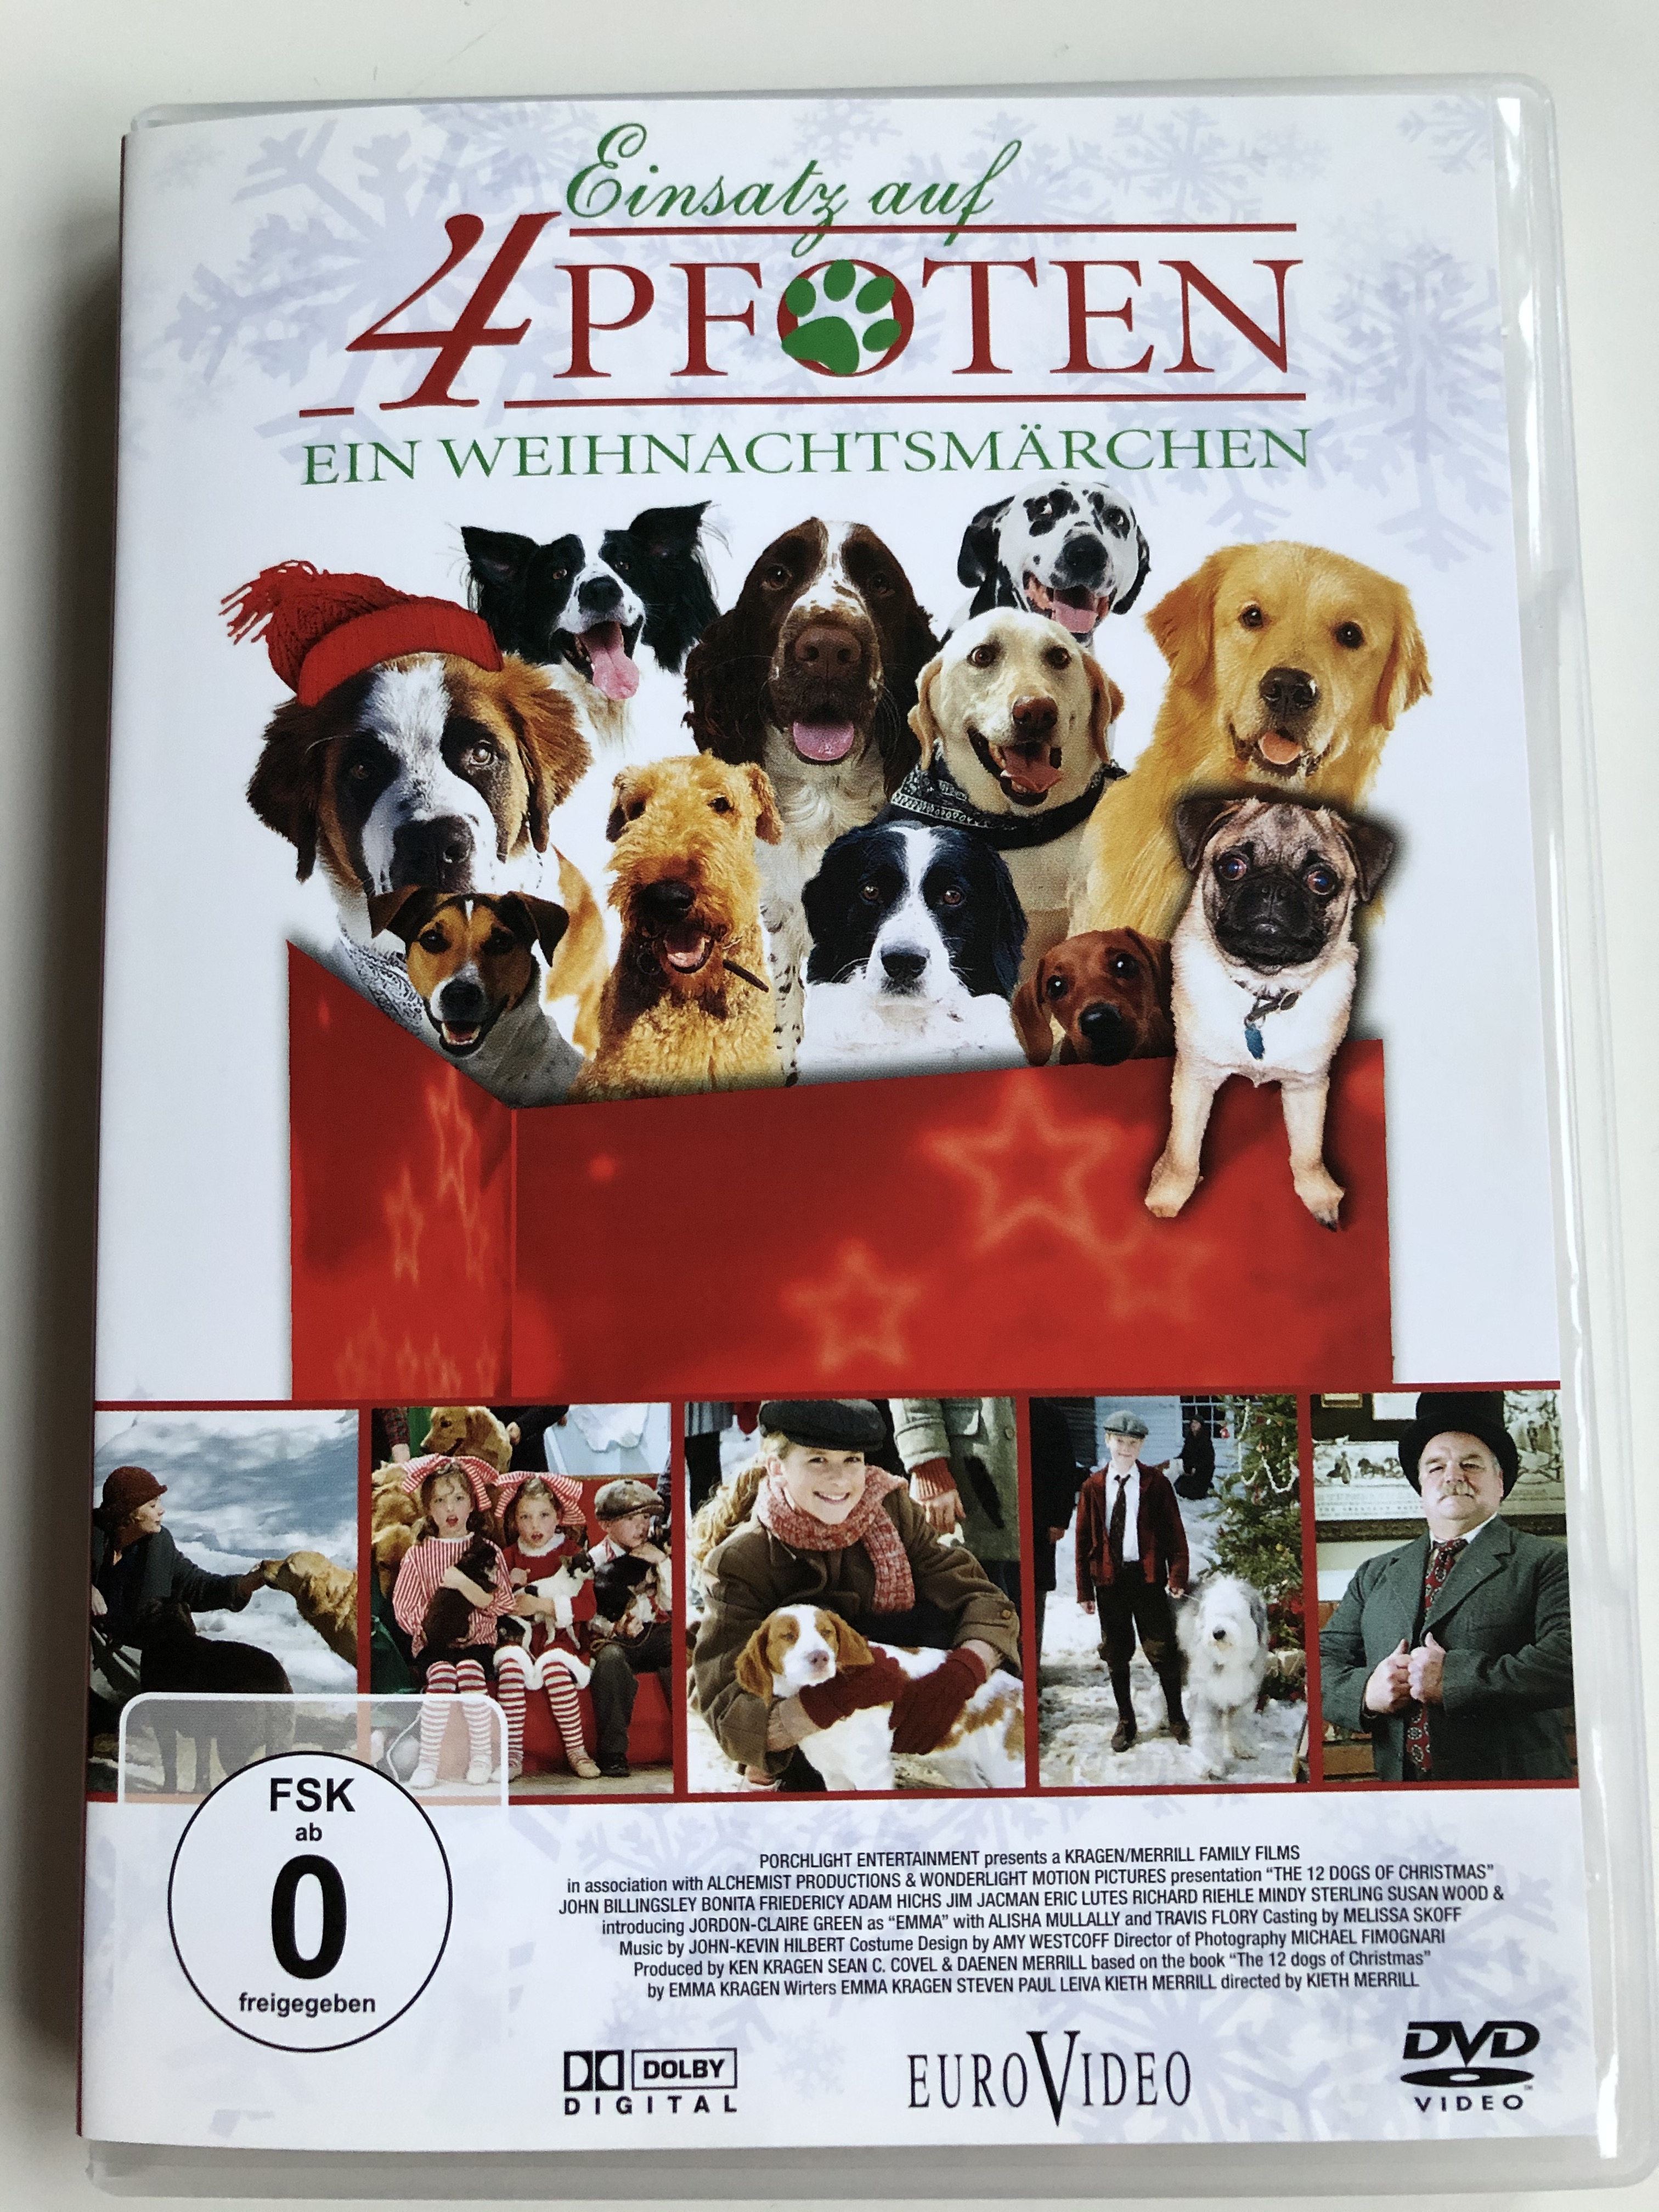 12-dogs-of-christmas-dvd-2005-einsatz-auf-4-pfoten-ein-weihnachtsm-rchen-1.jpg